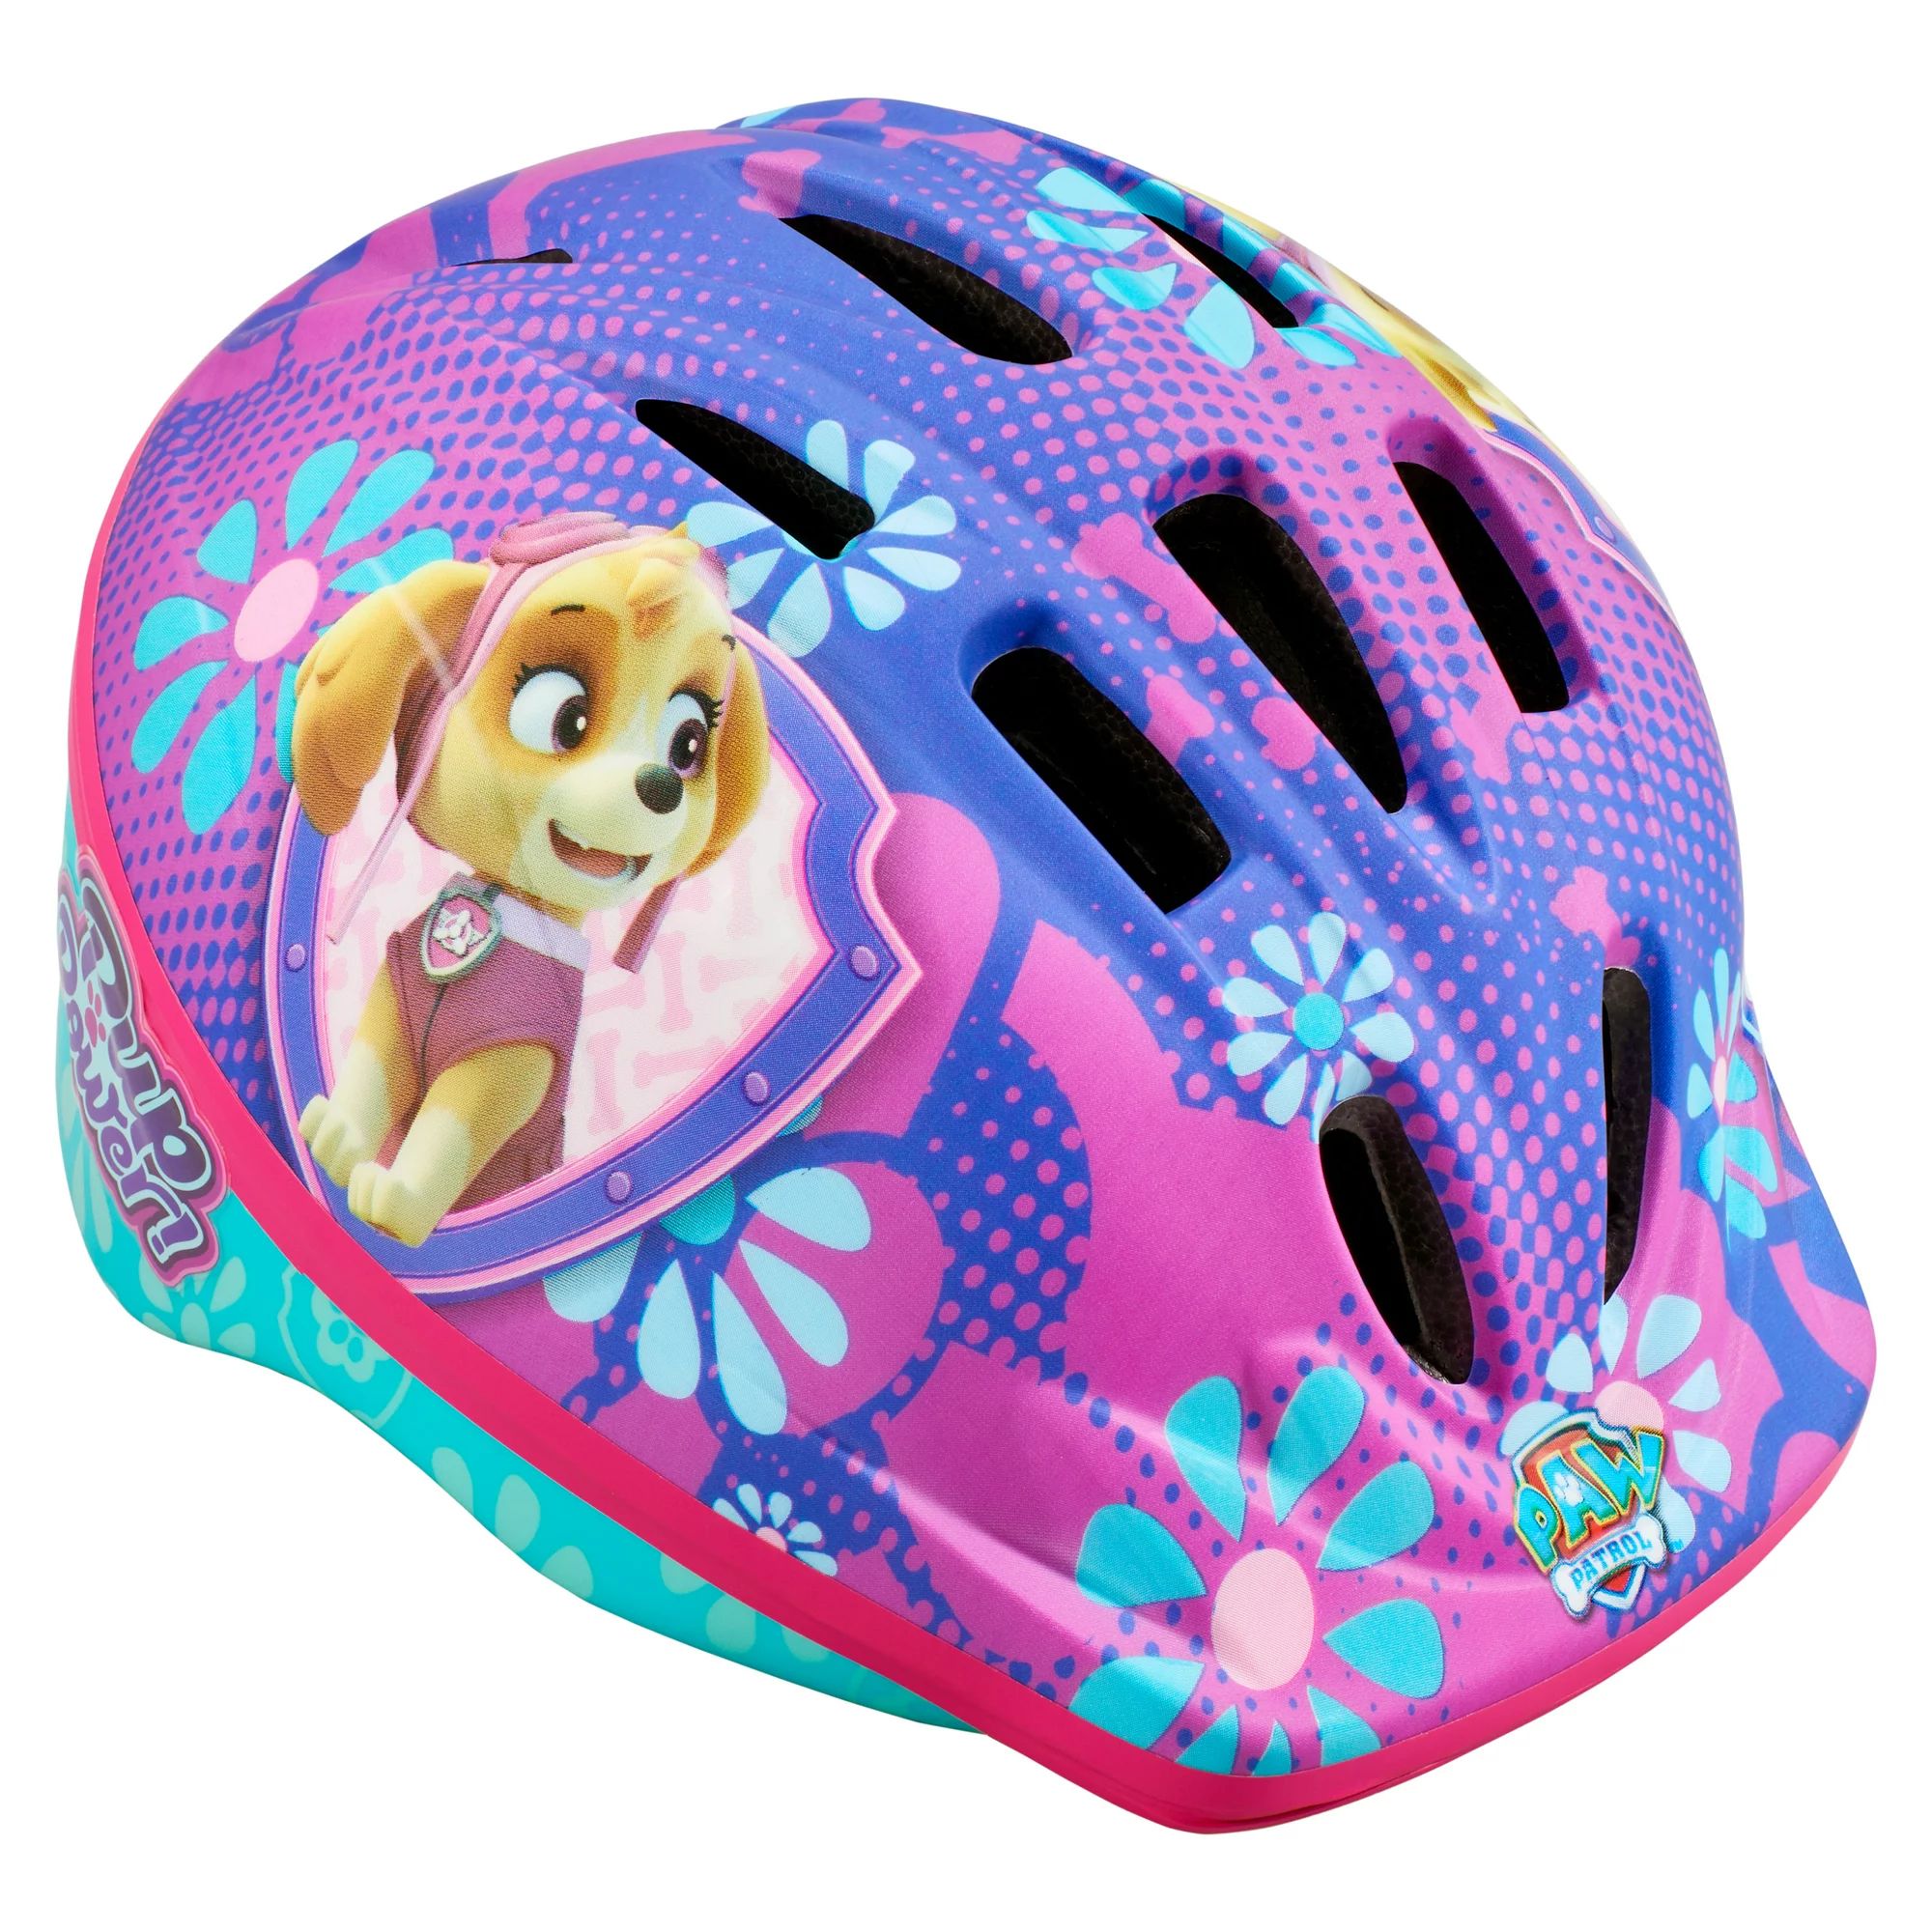 Nickelodeon Paw Patrol: Skye Bike Helmet, Ages 3-5, Purple & Blue - Walmart.com | Walmart (US)